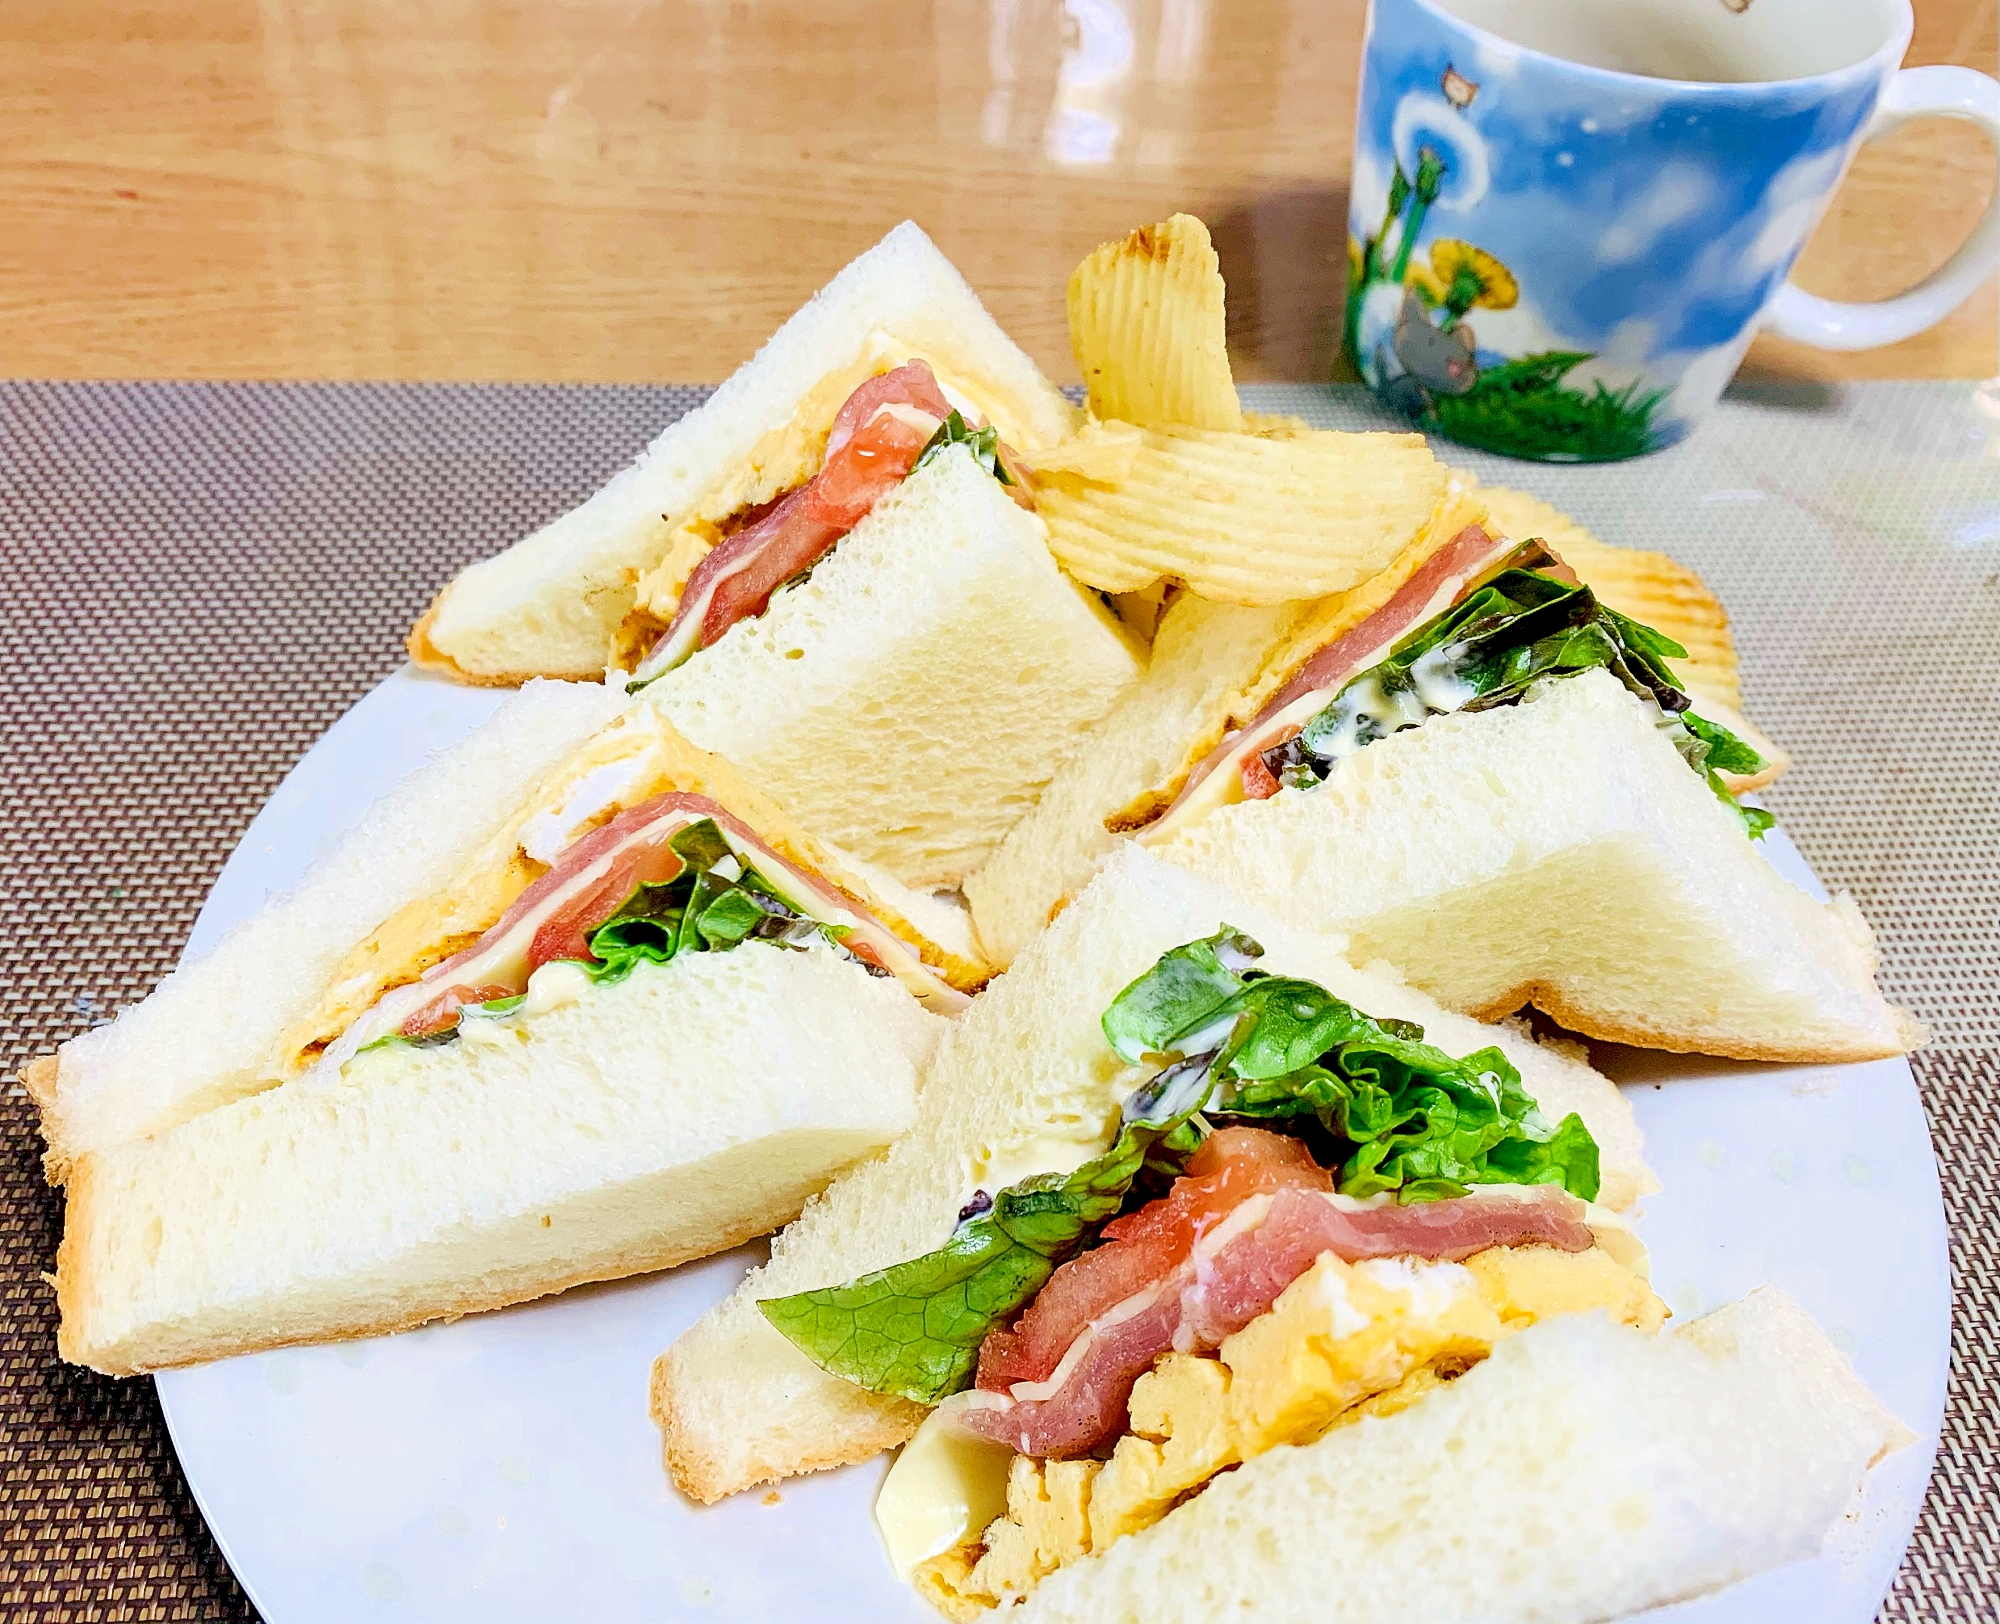 ポテチ添えのカフェ風サンドイッチ